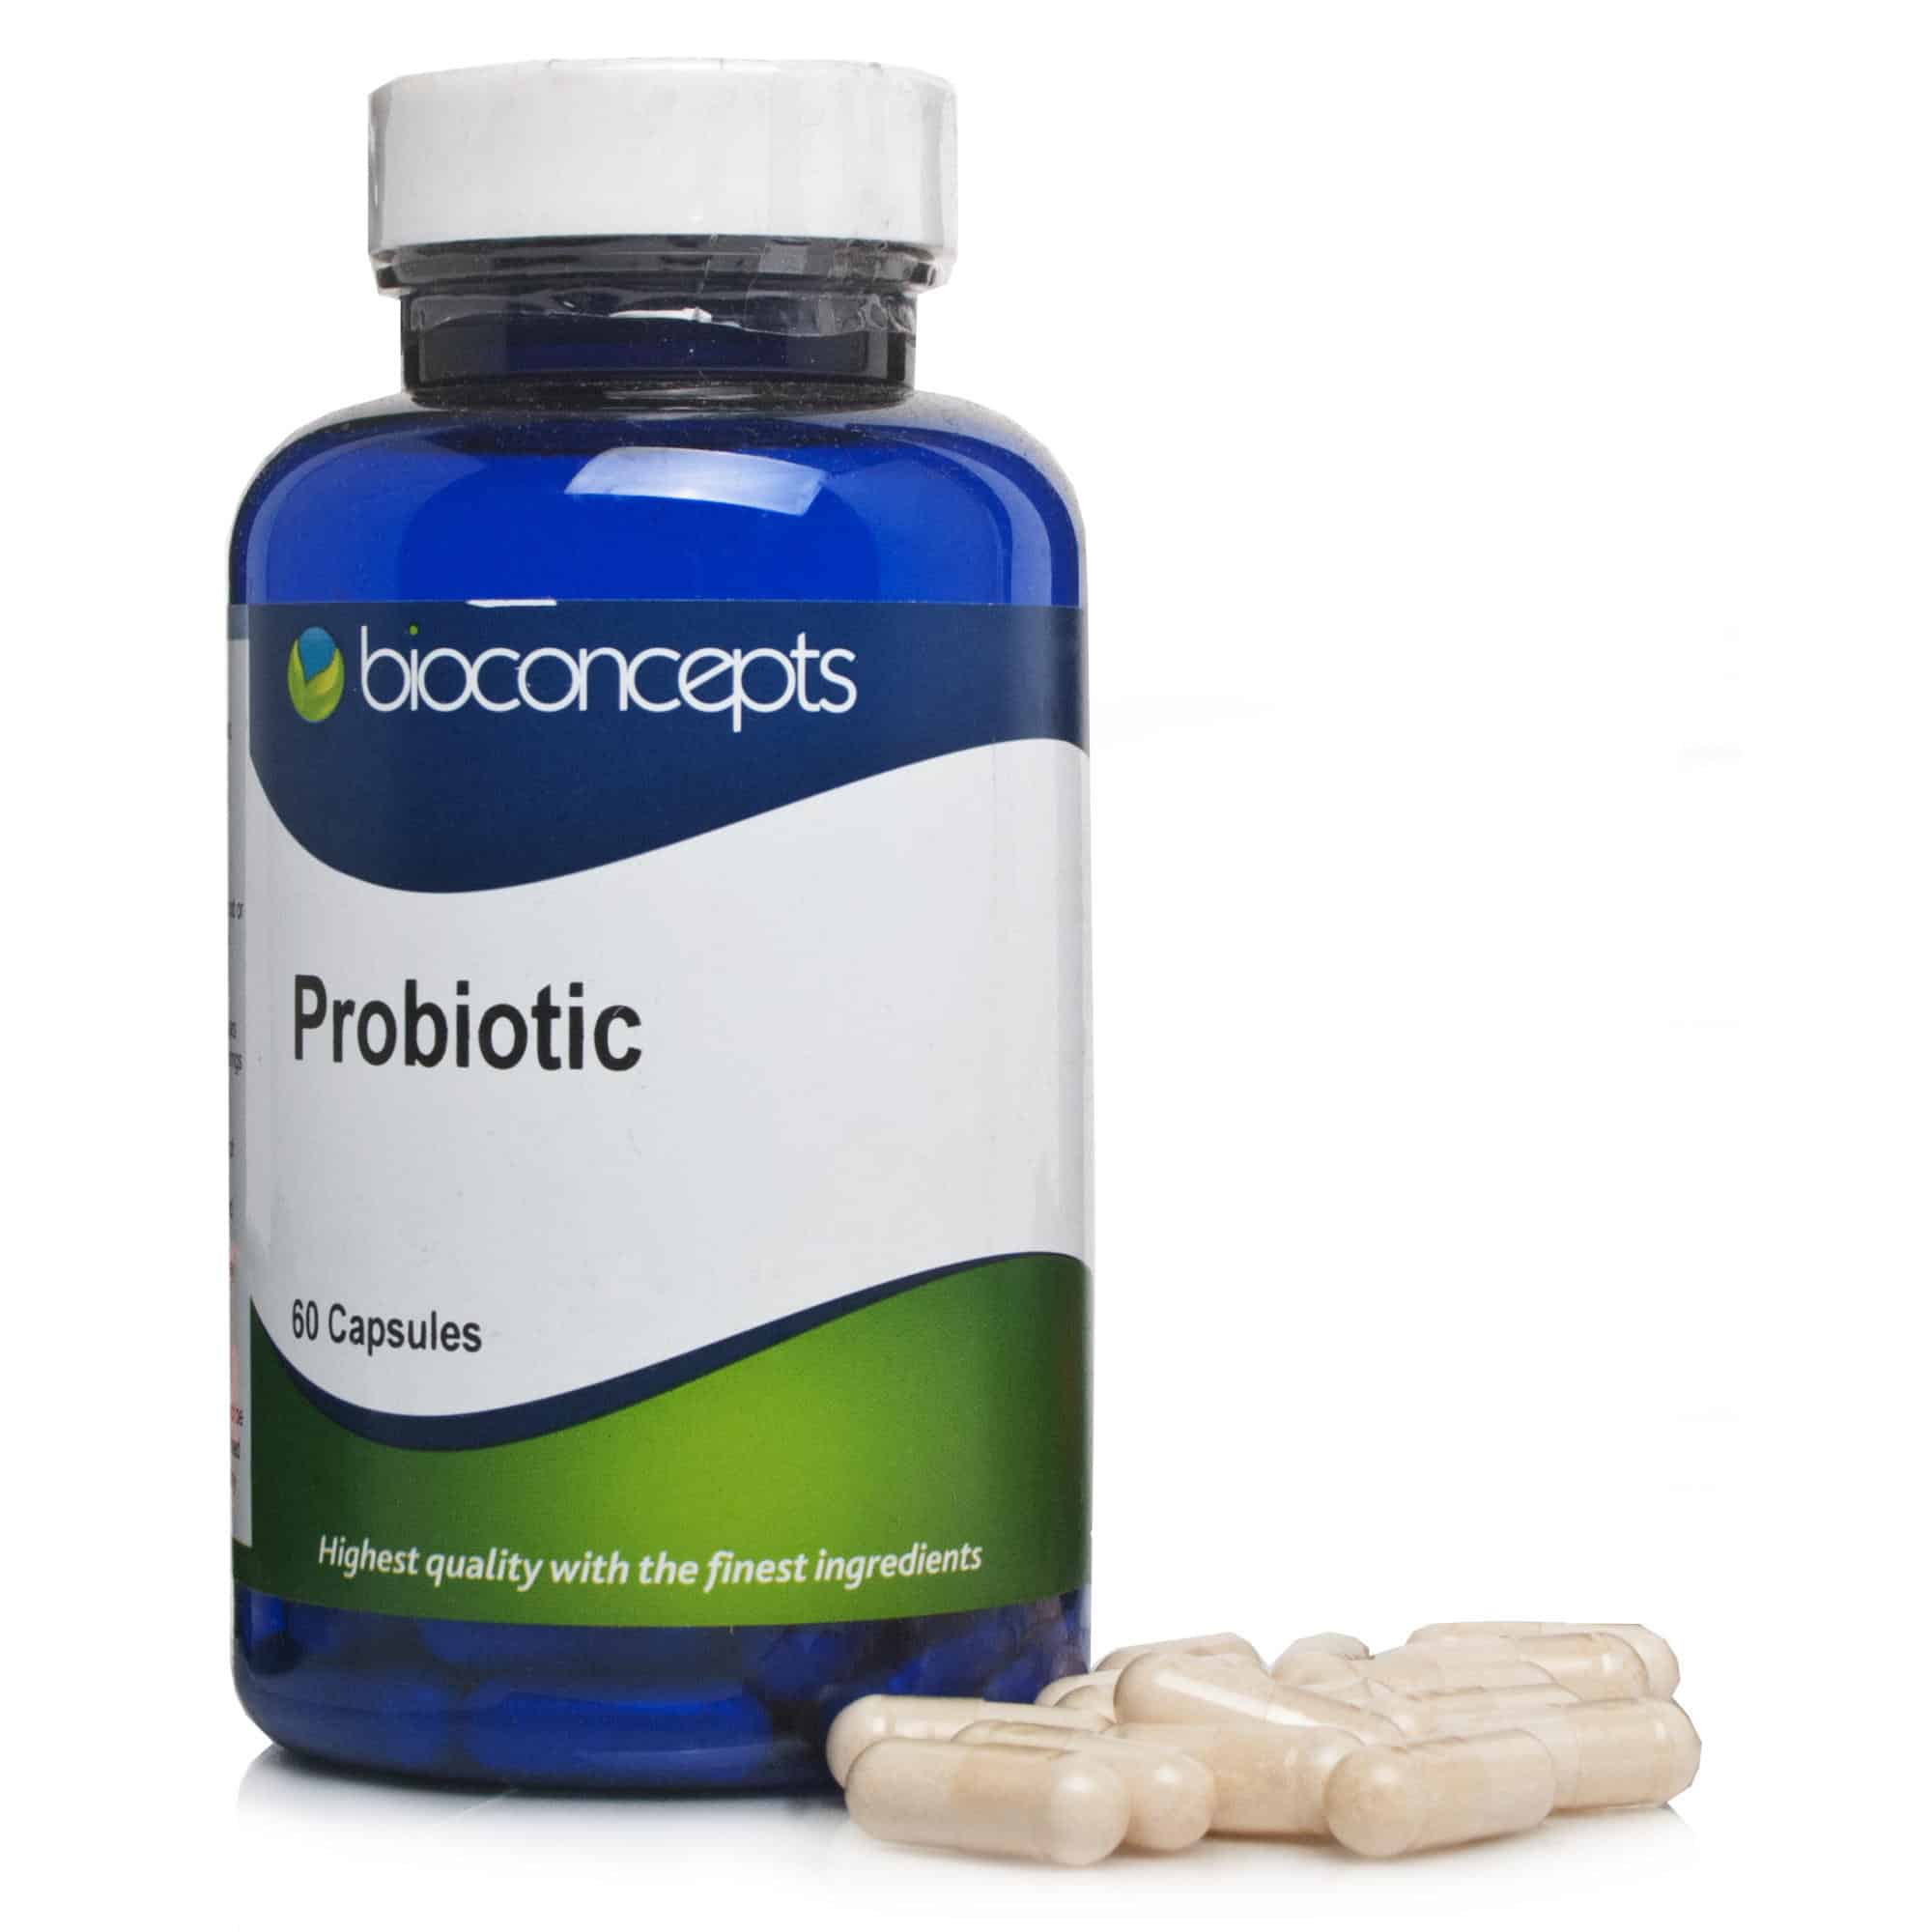 Bioconcepts Probiotic 400mg Capsules